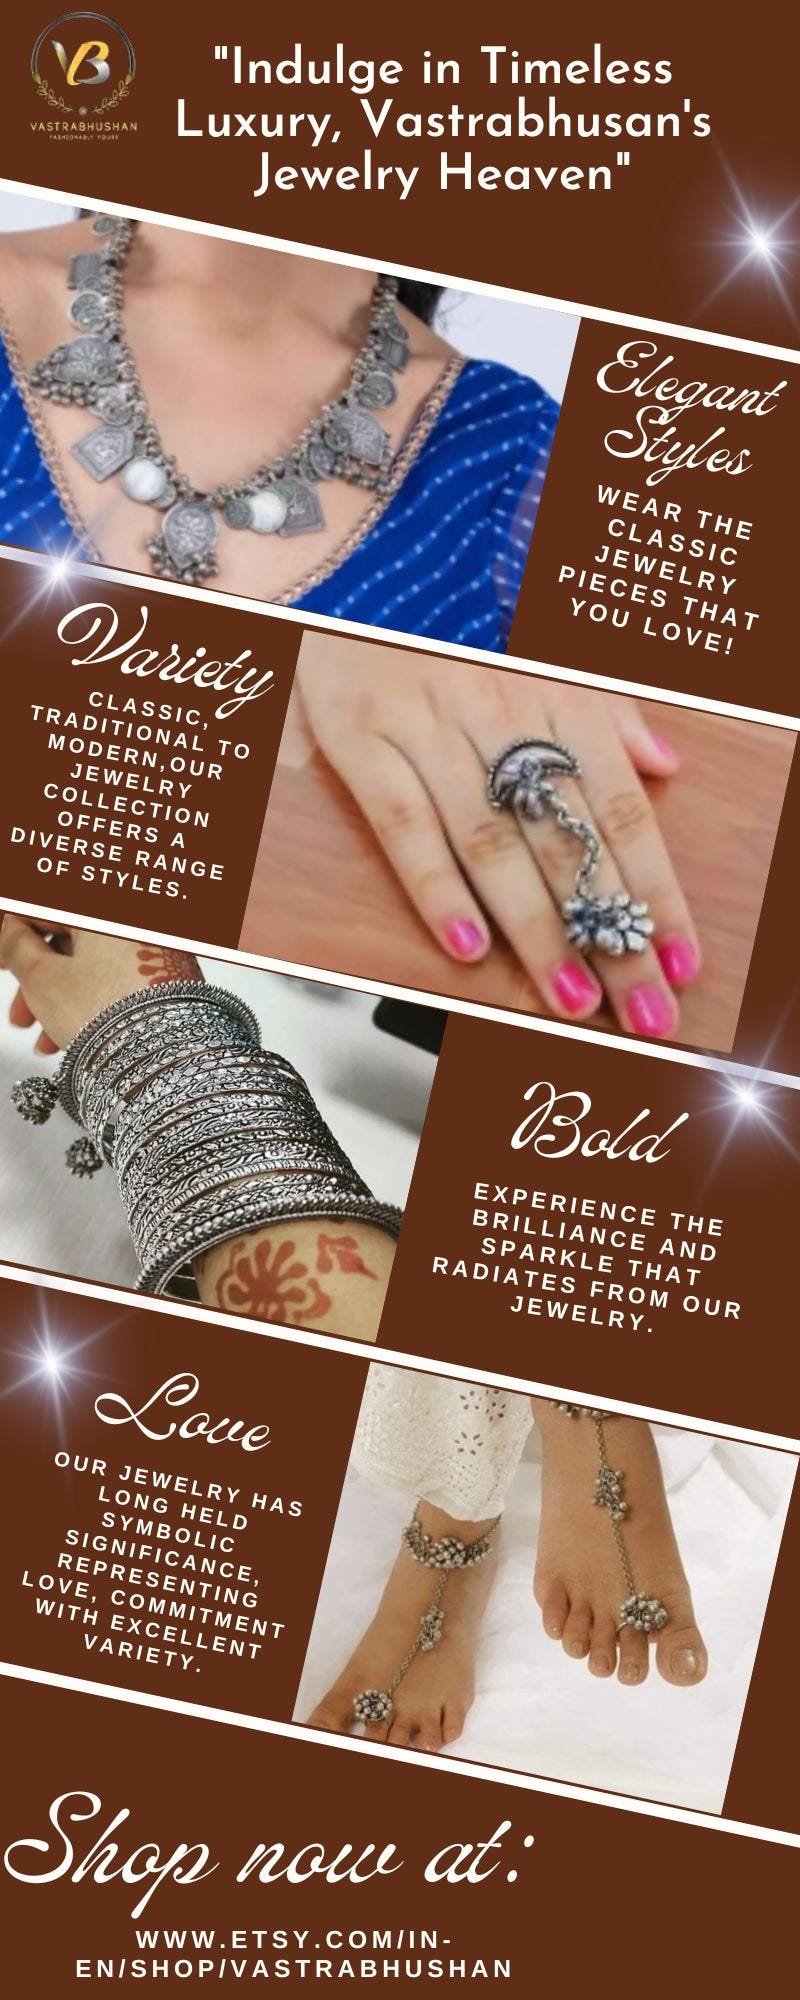 Buy Oxidised Jewellery Online - Vastrabhushan - Medium